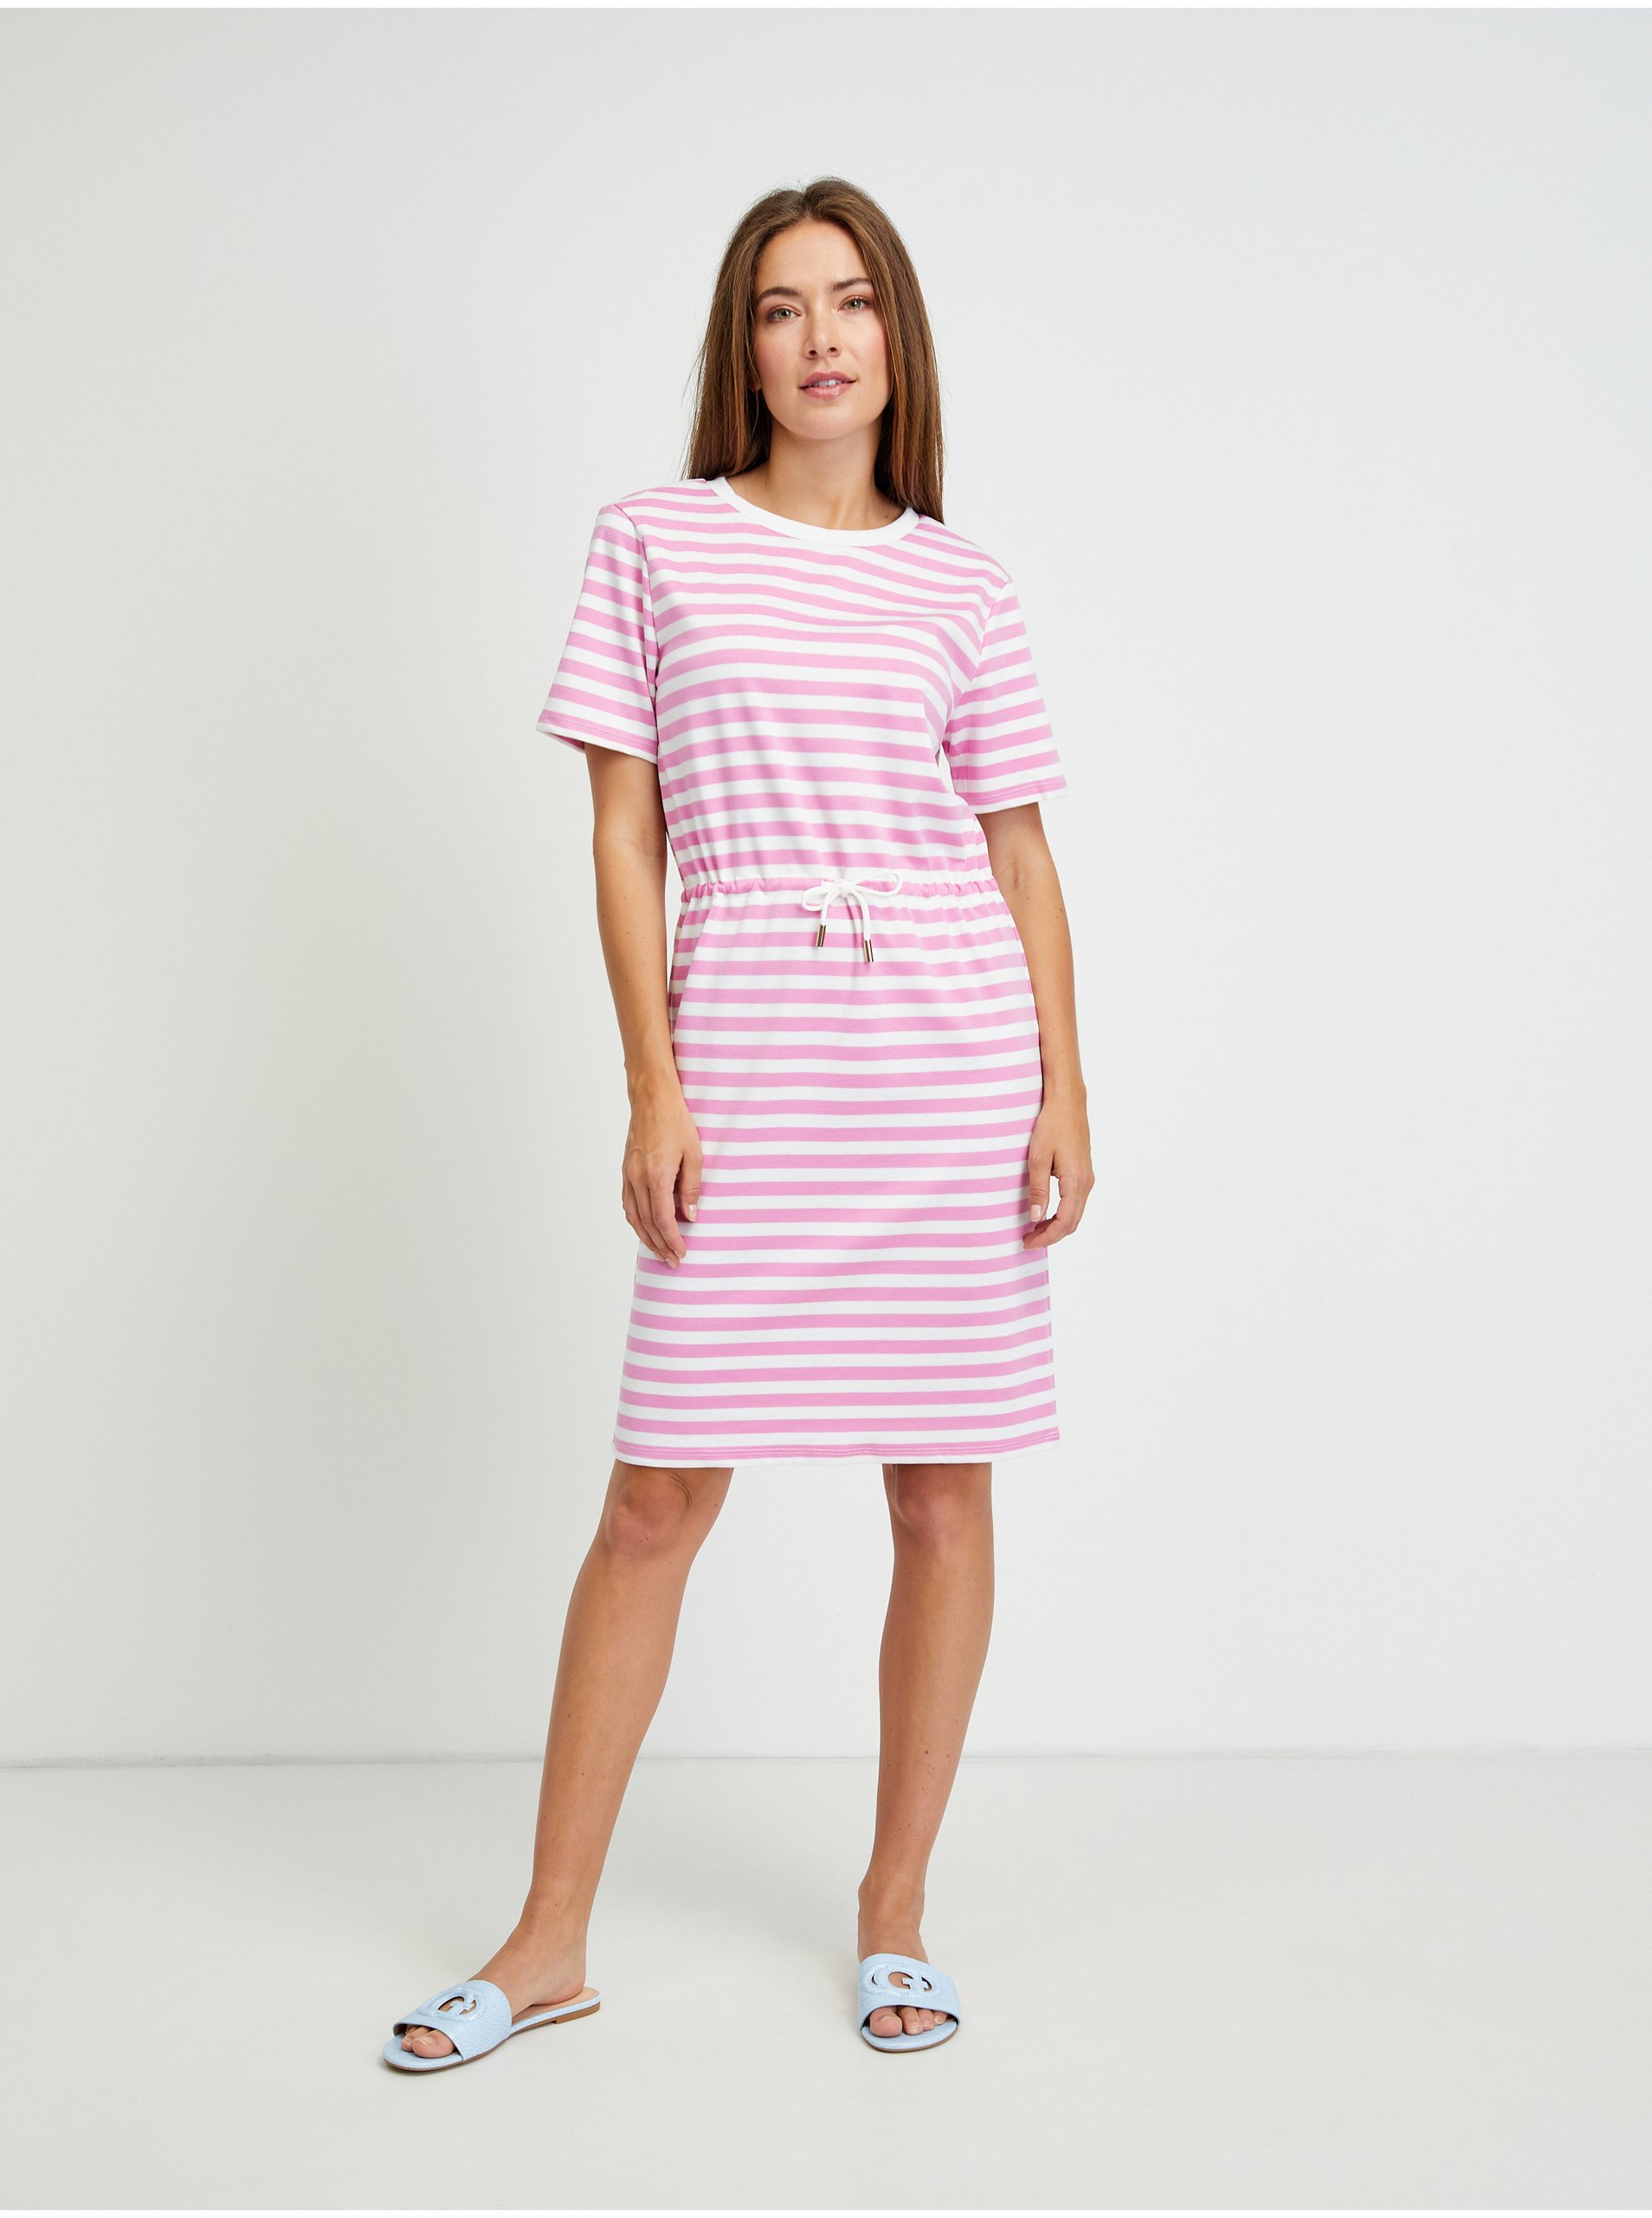 White-pink Striped Dress VILA Tinny - Women